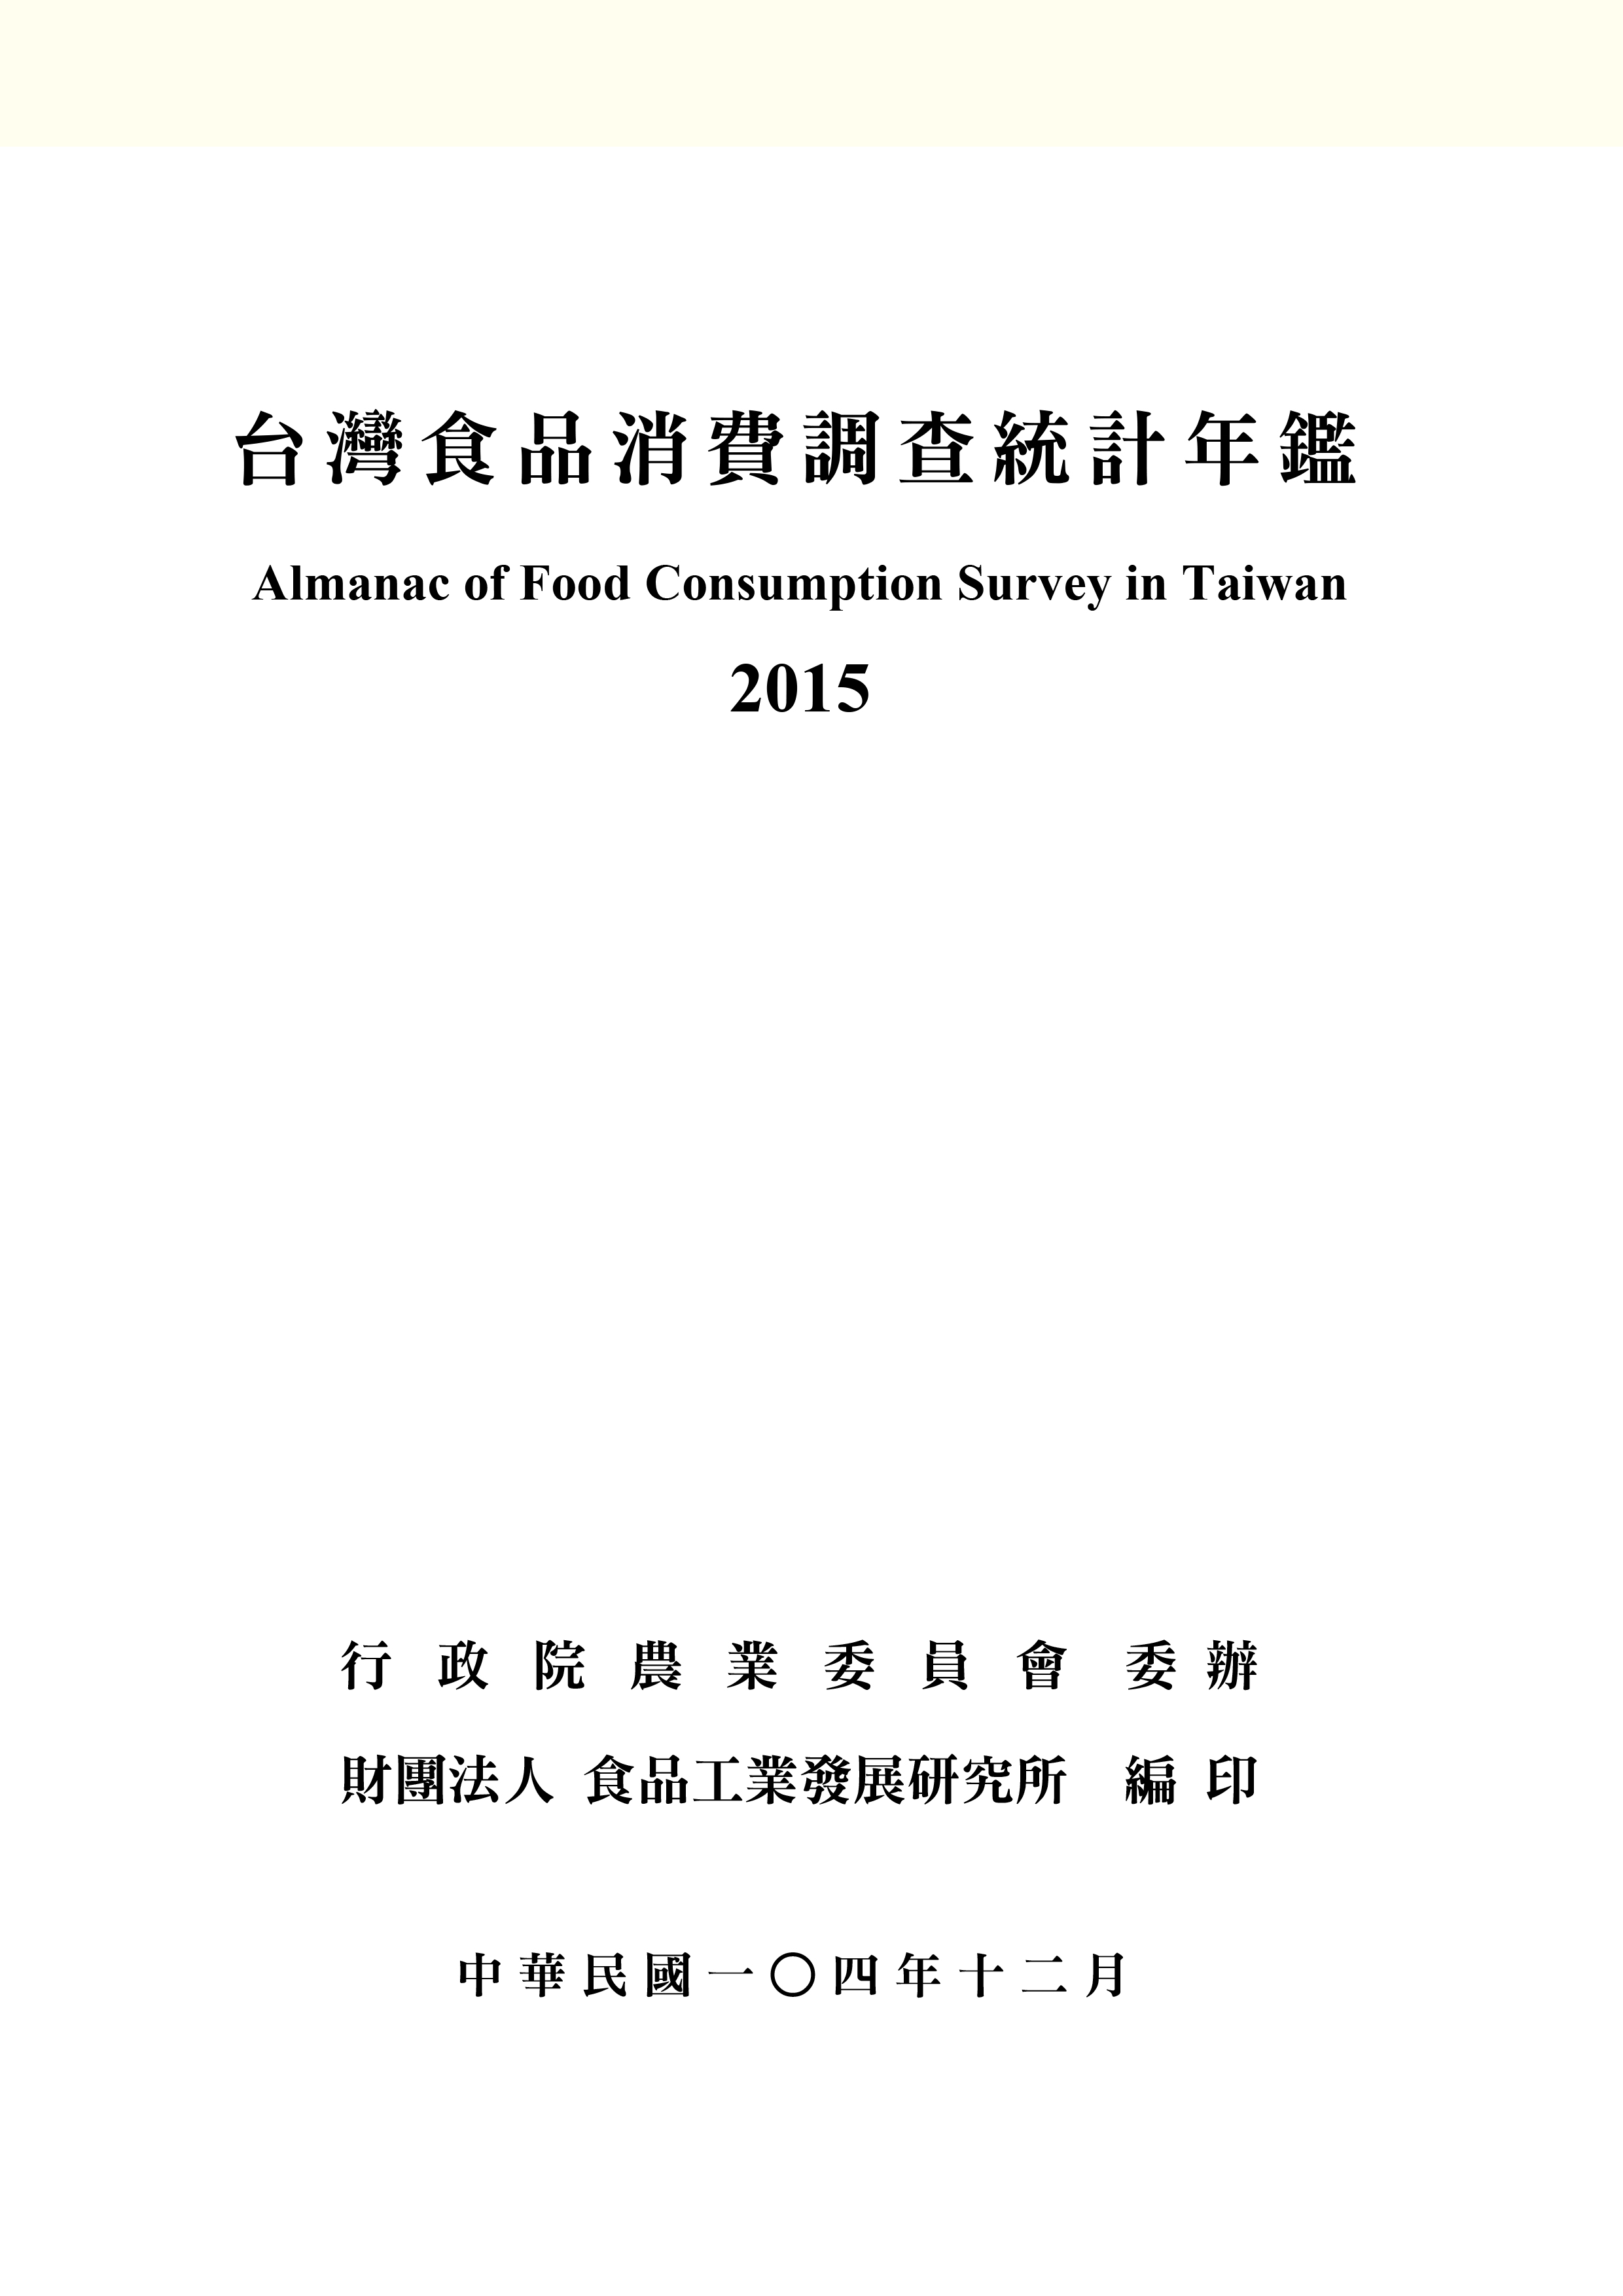 台灣食品消費調查統計年鑑(2015年版) 